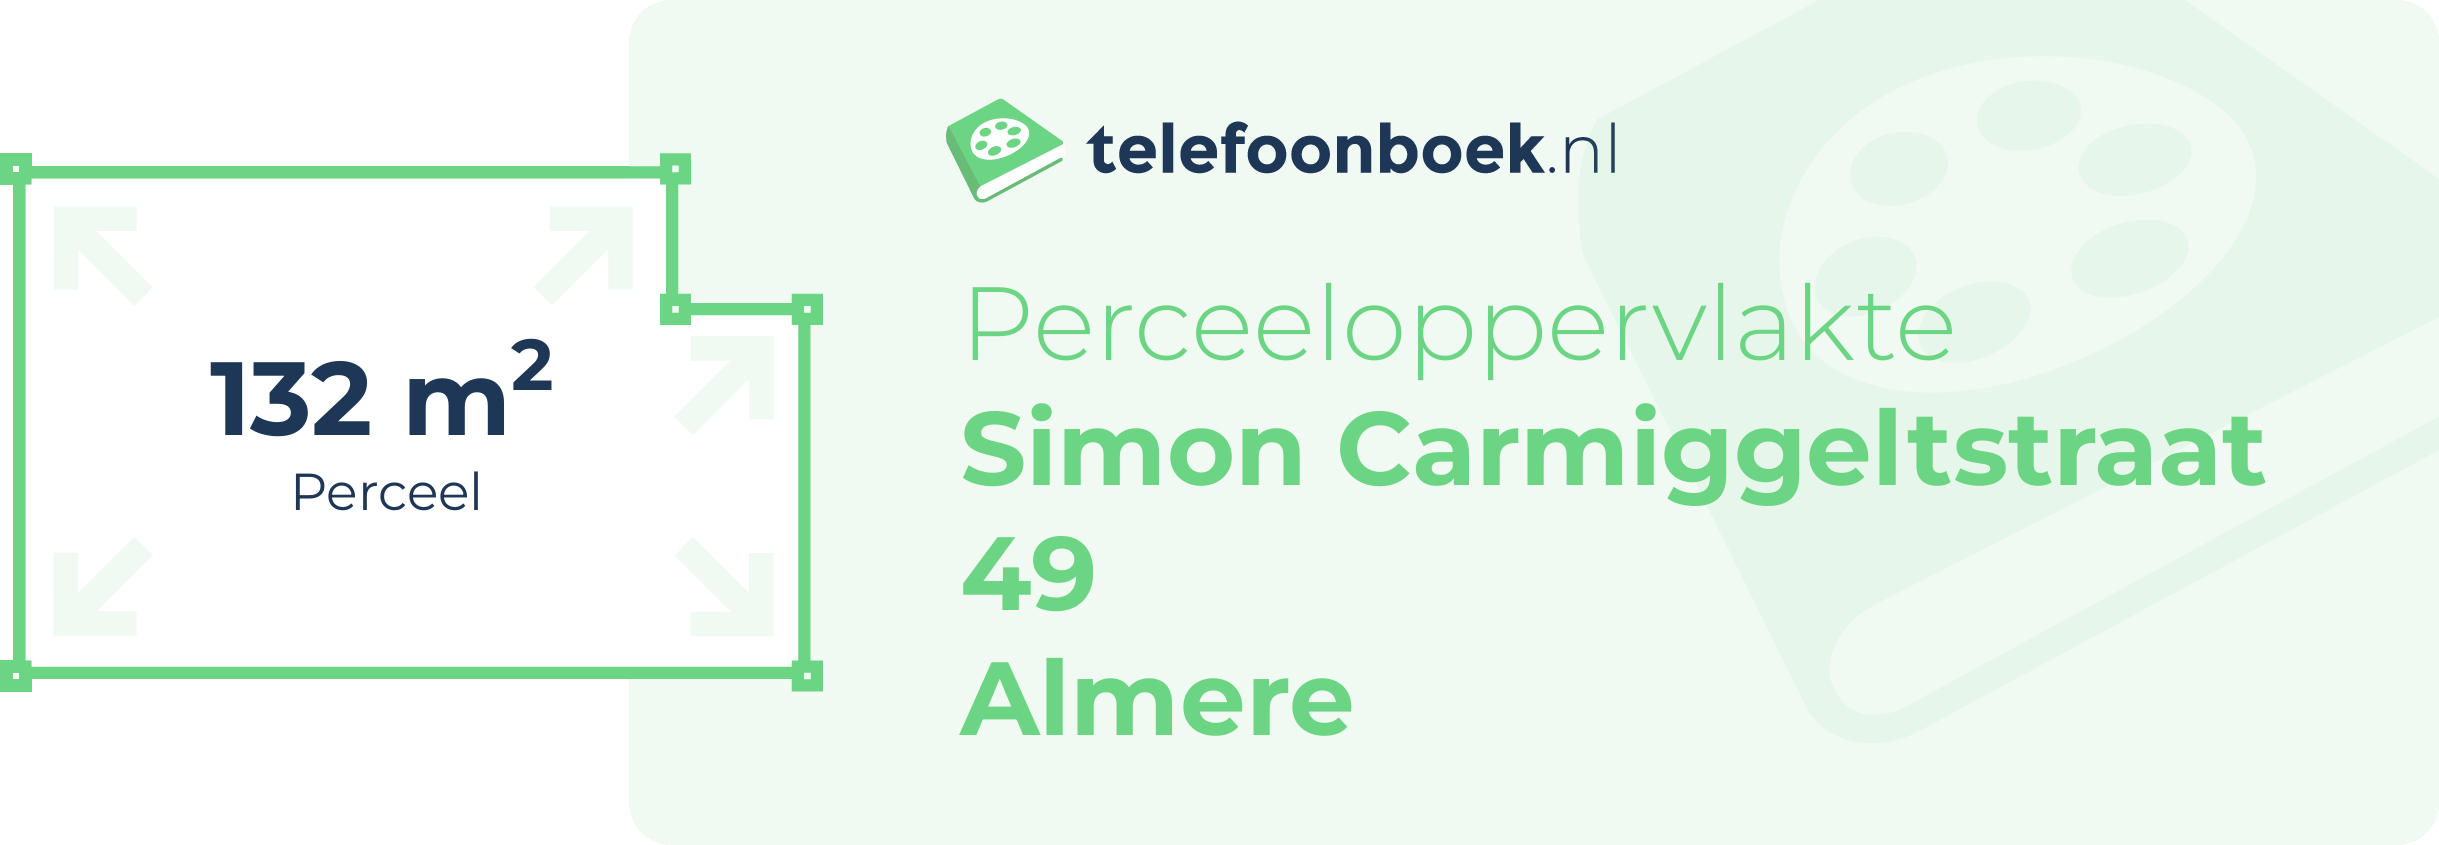 Perceeloppervlakte Simon Carmiggeltstraat 49 Almere